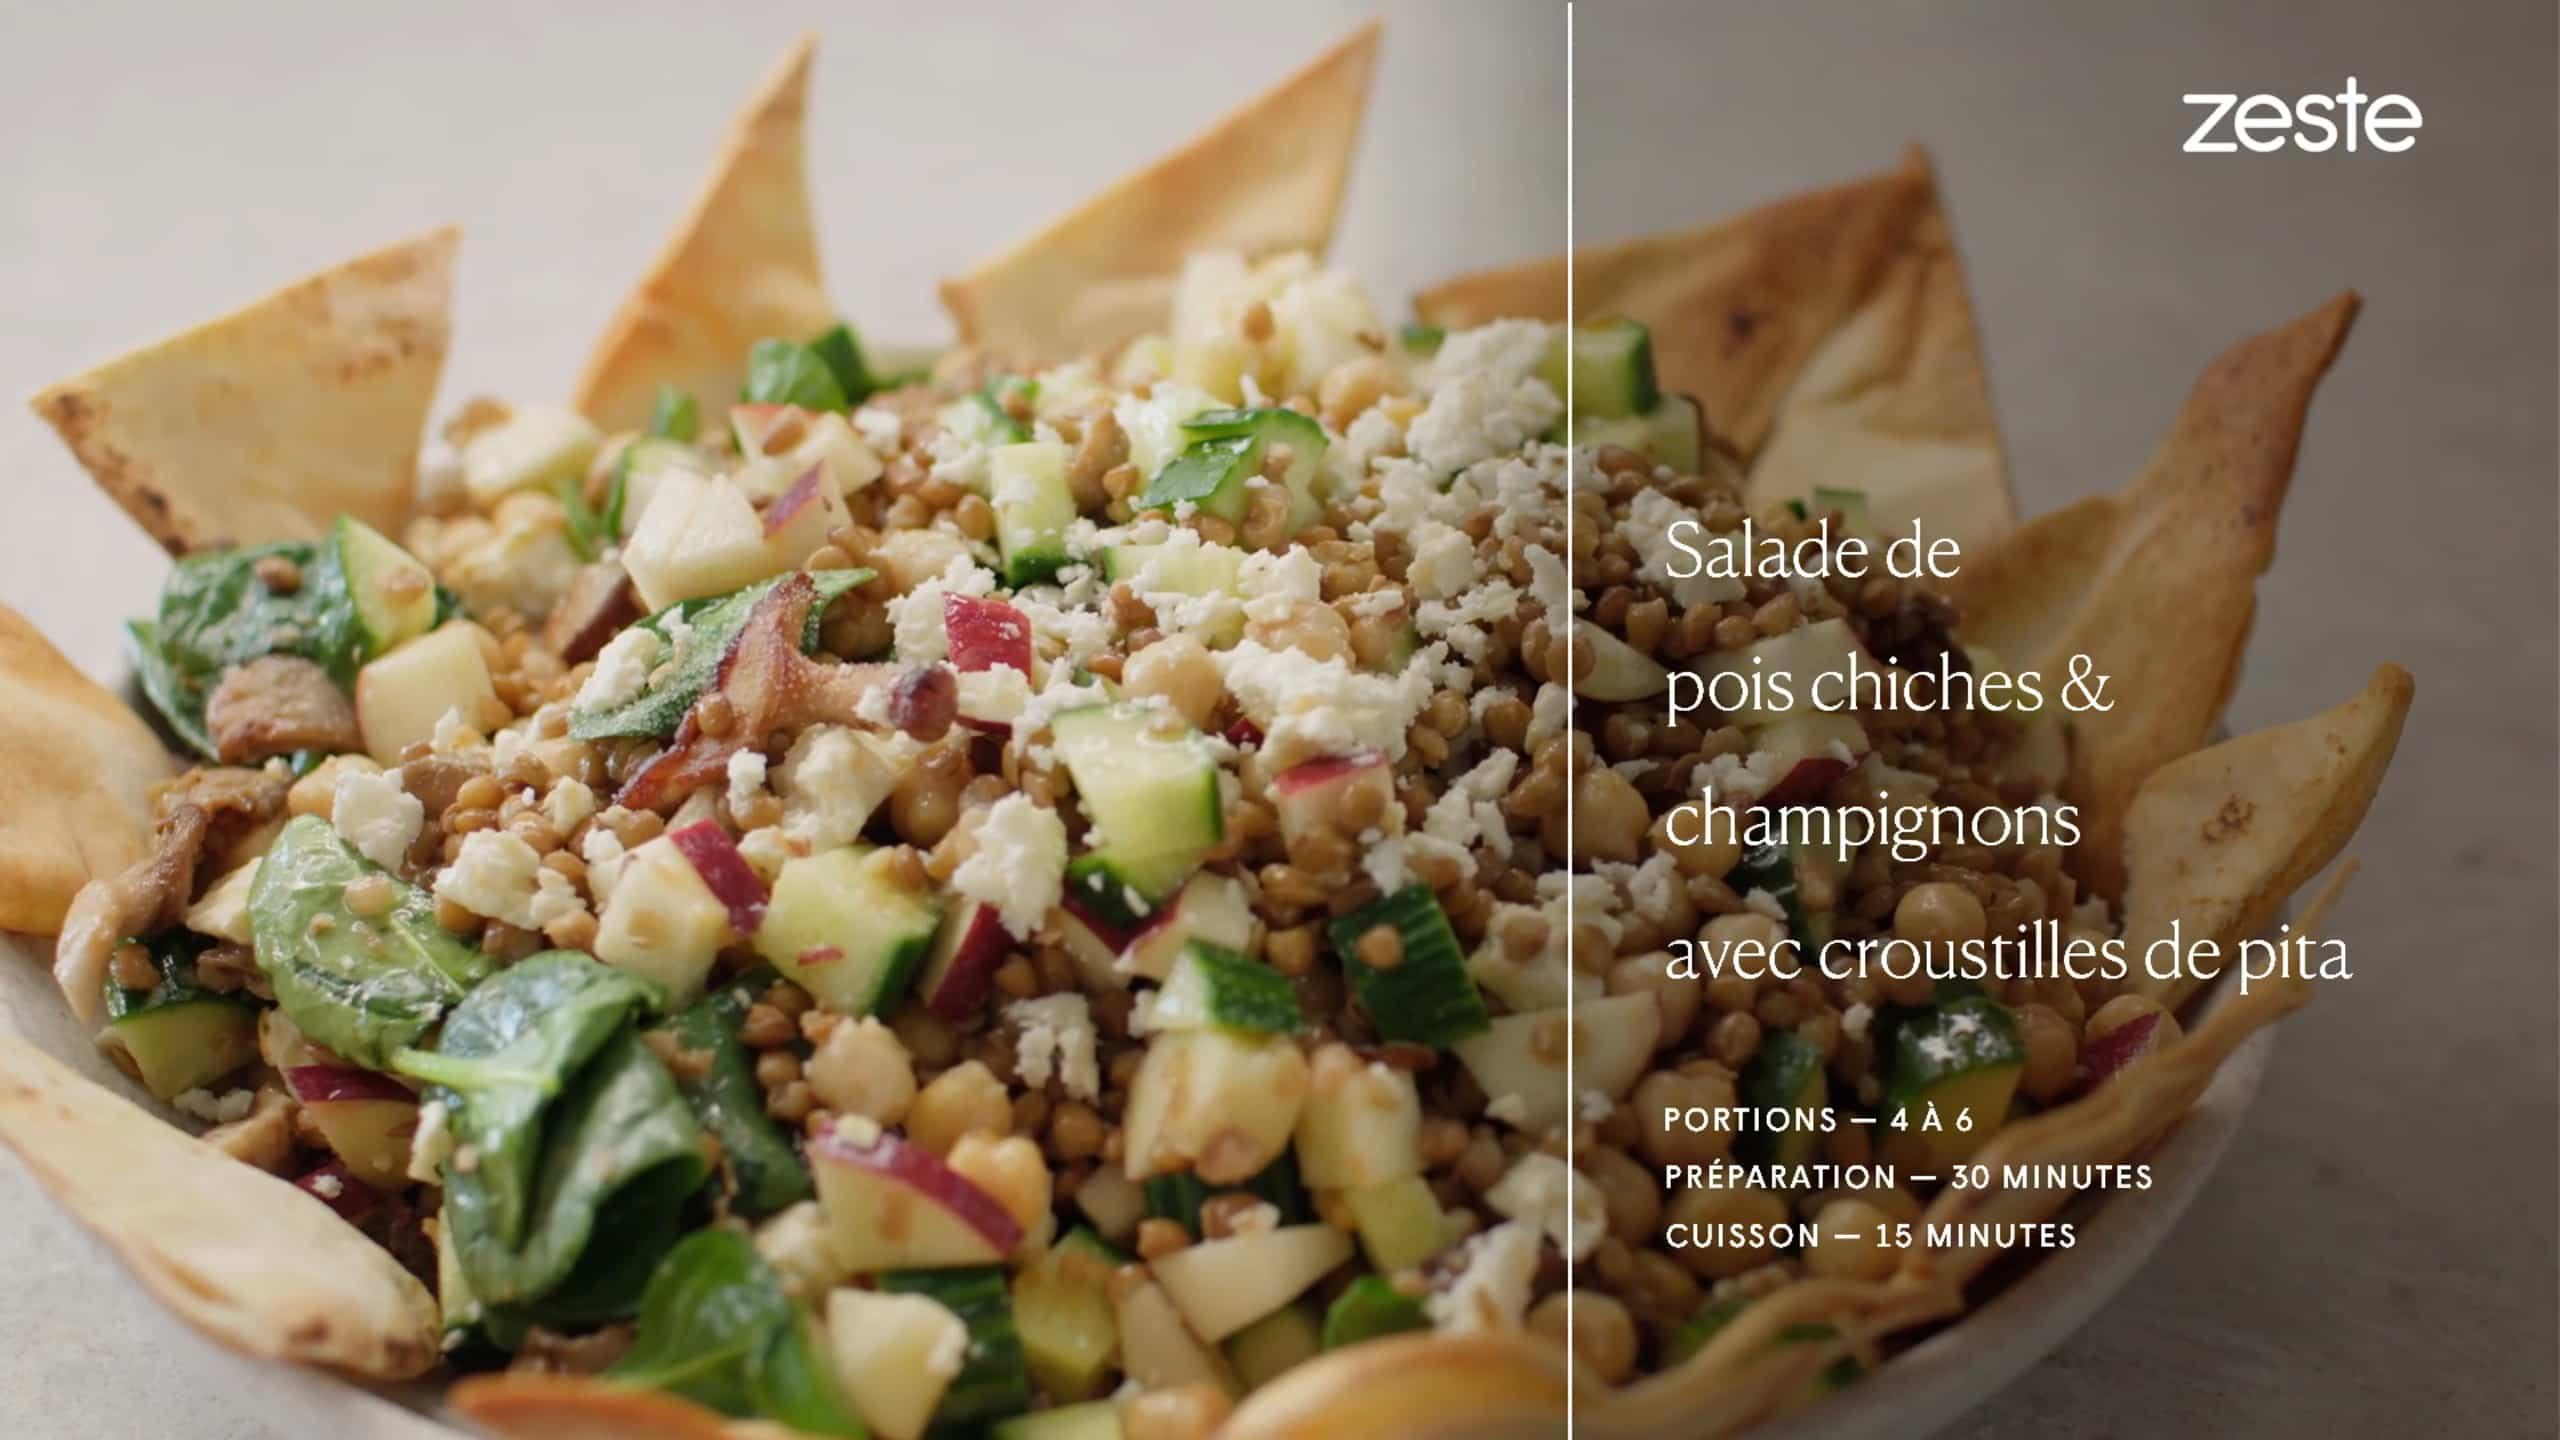 Salade de pois chiches & champignons avec croustilles de pita